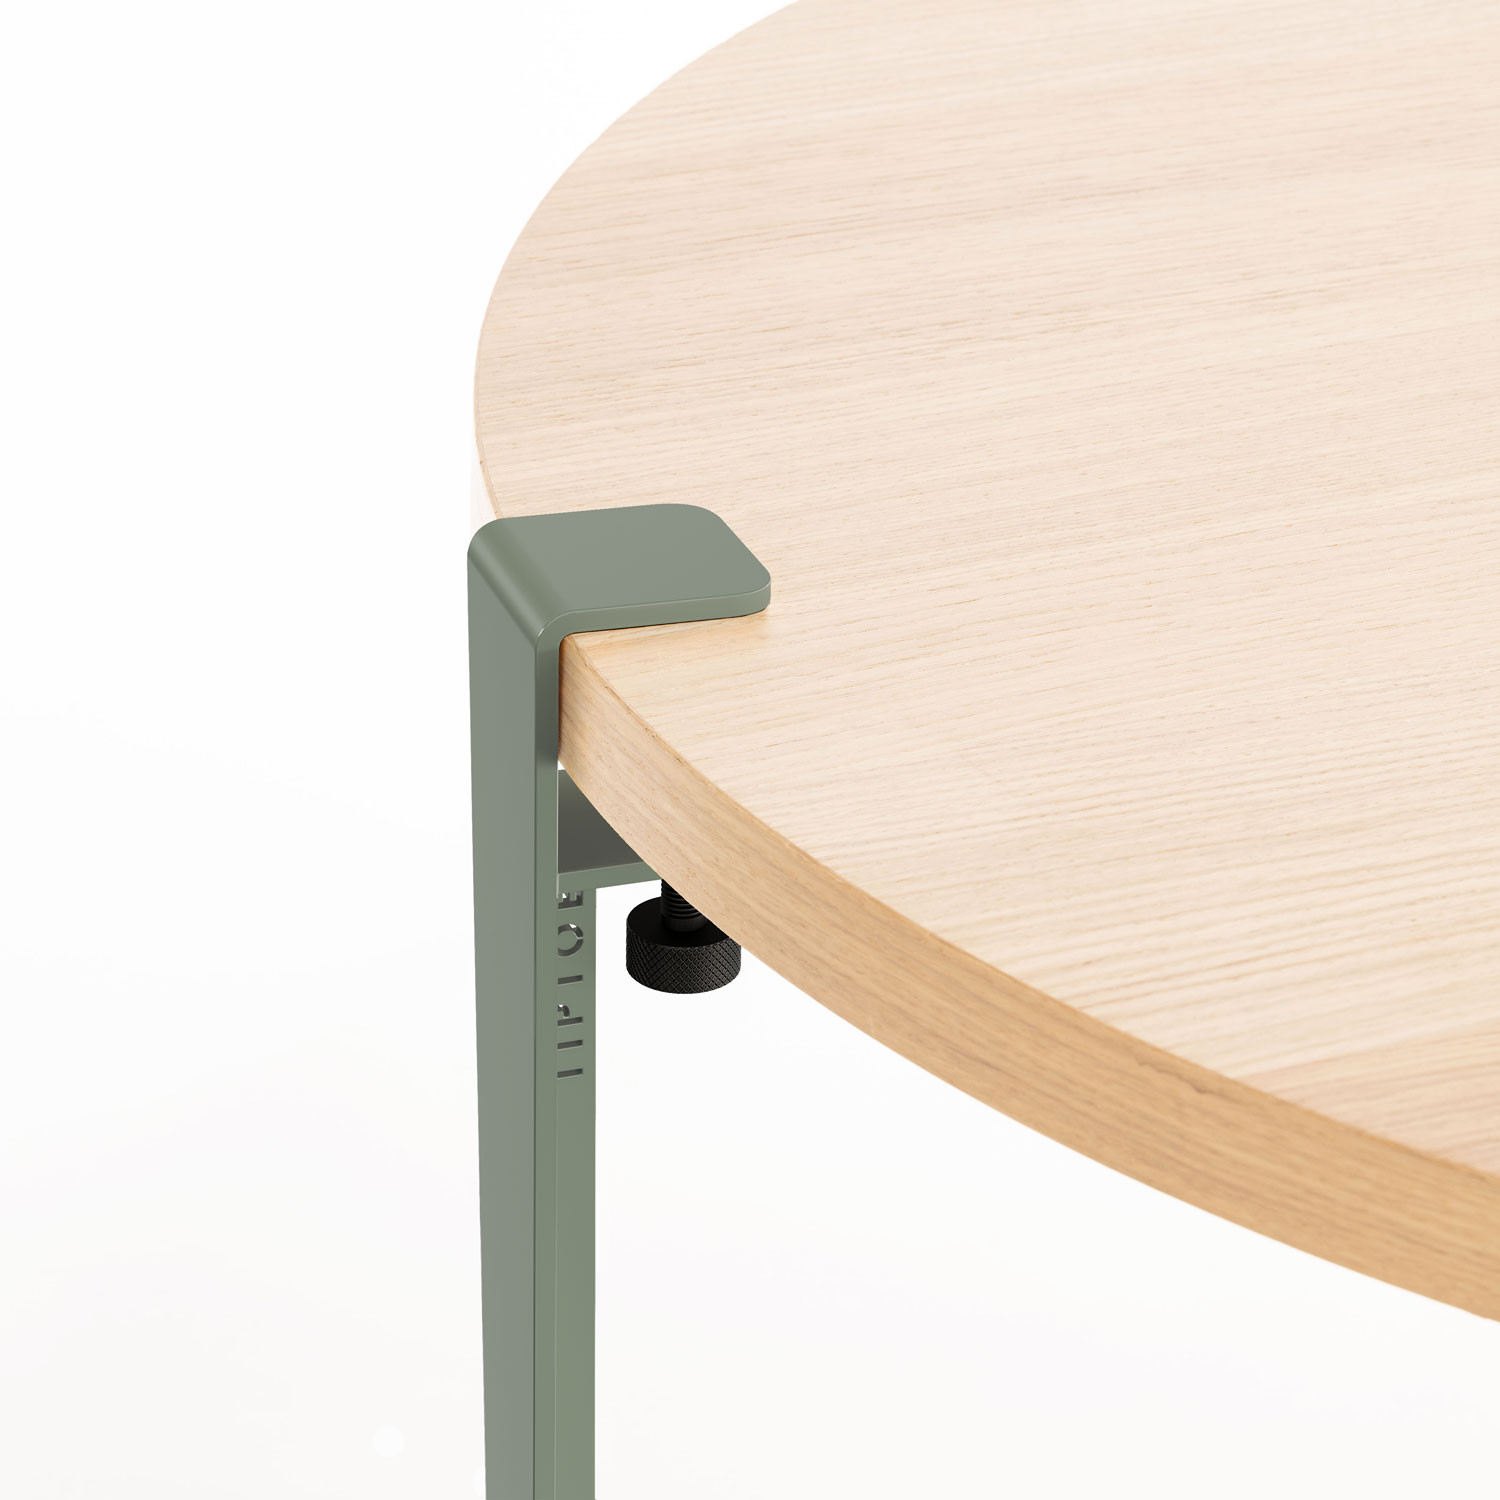 PEBBLE coffee table – solid oak